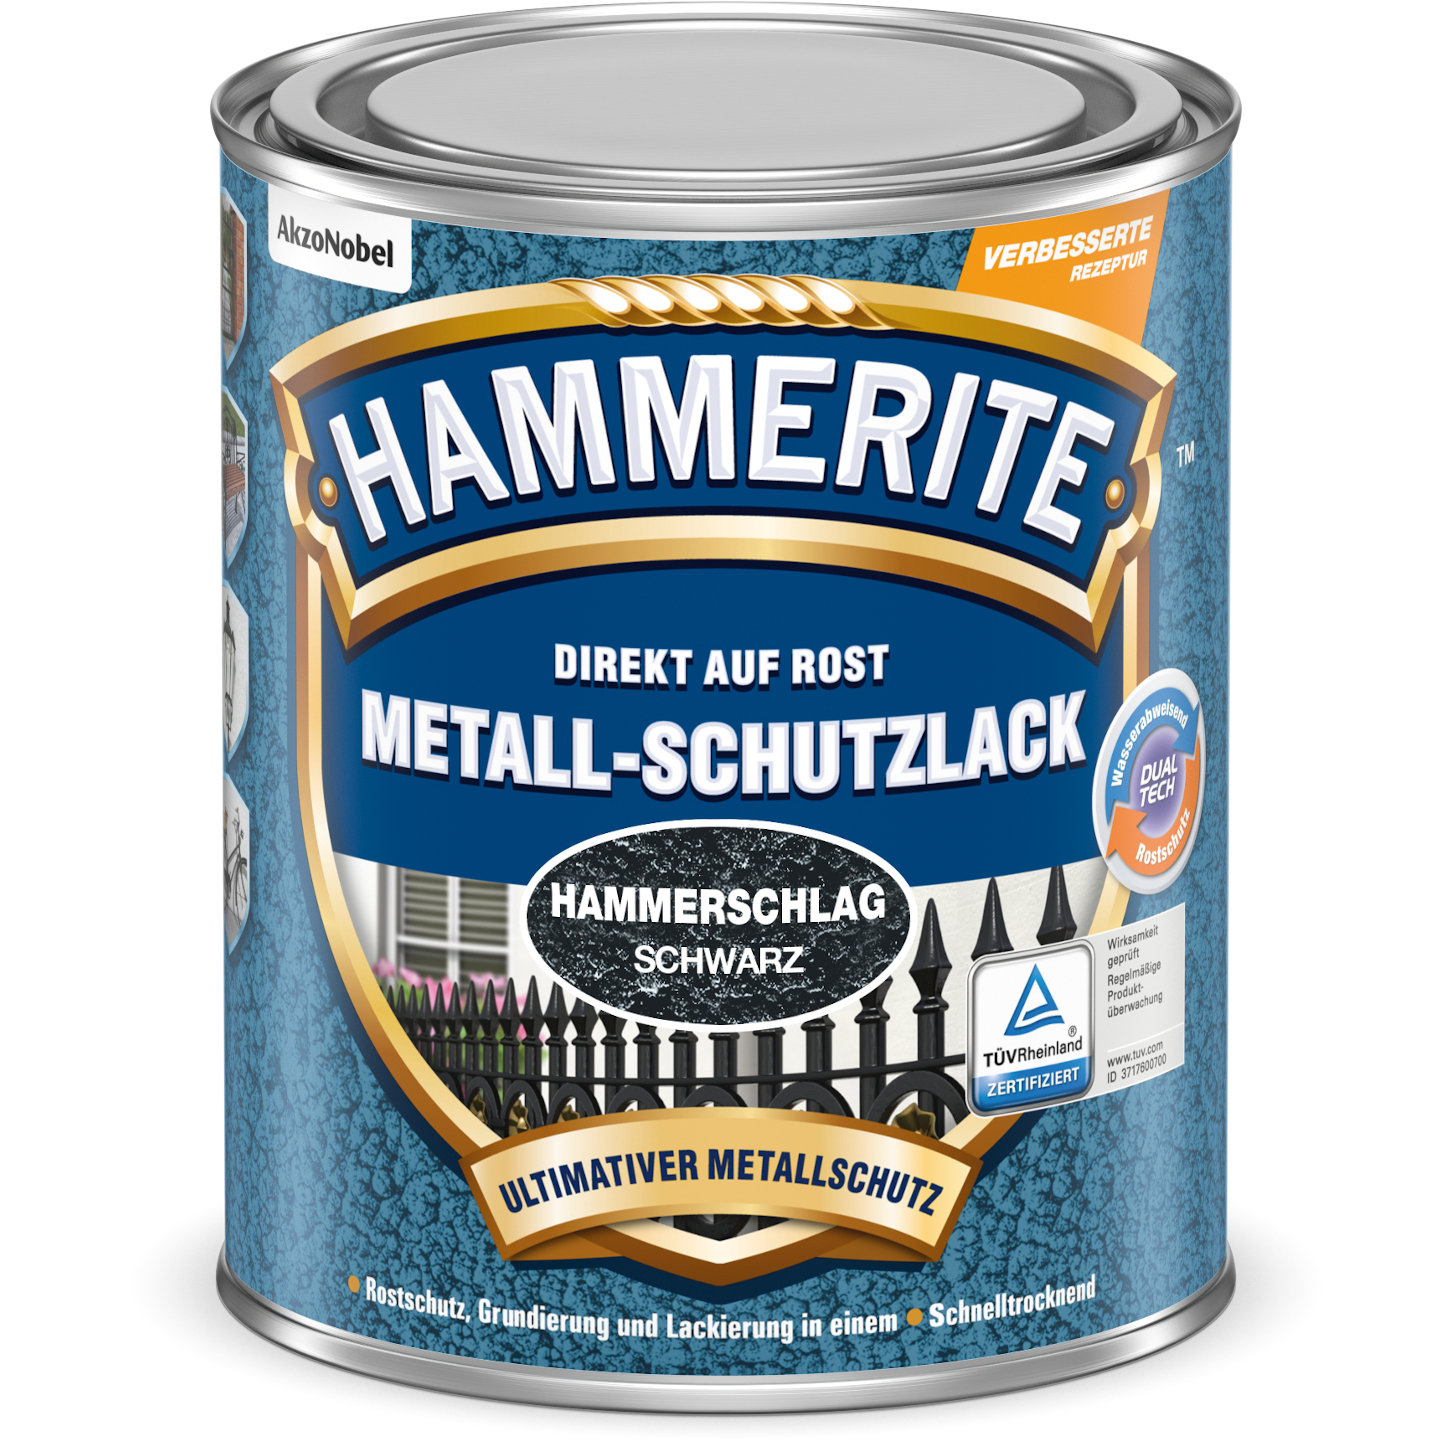 Hammerite Metall-Schutzlack Hammerschlag schwarz 750 ml